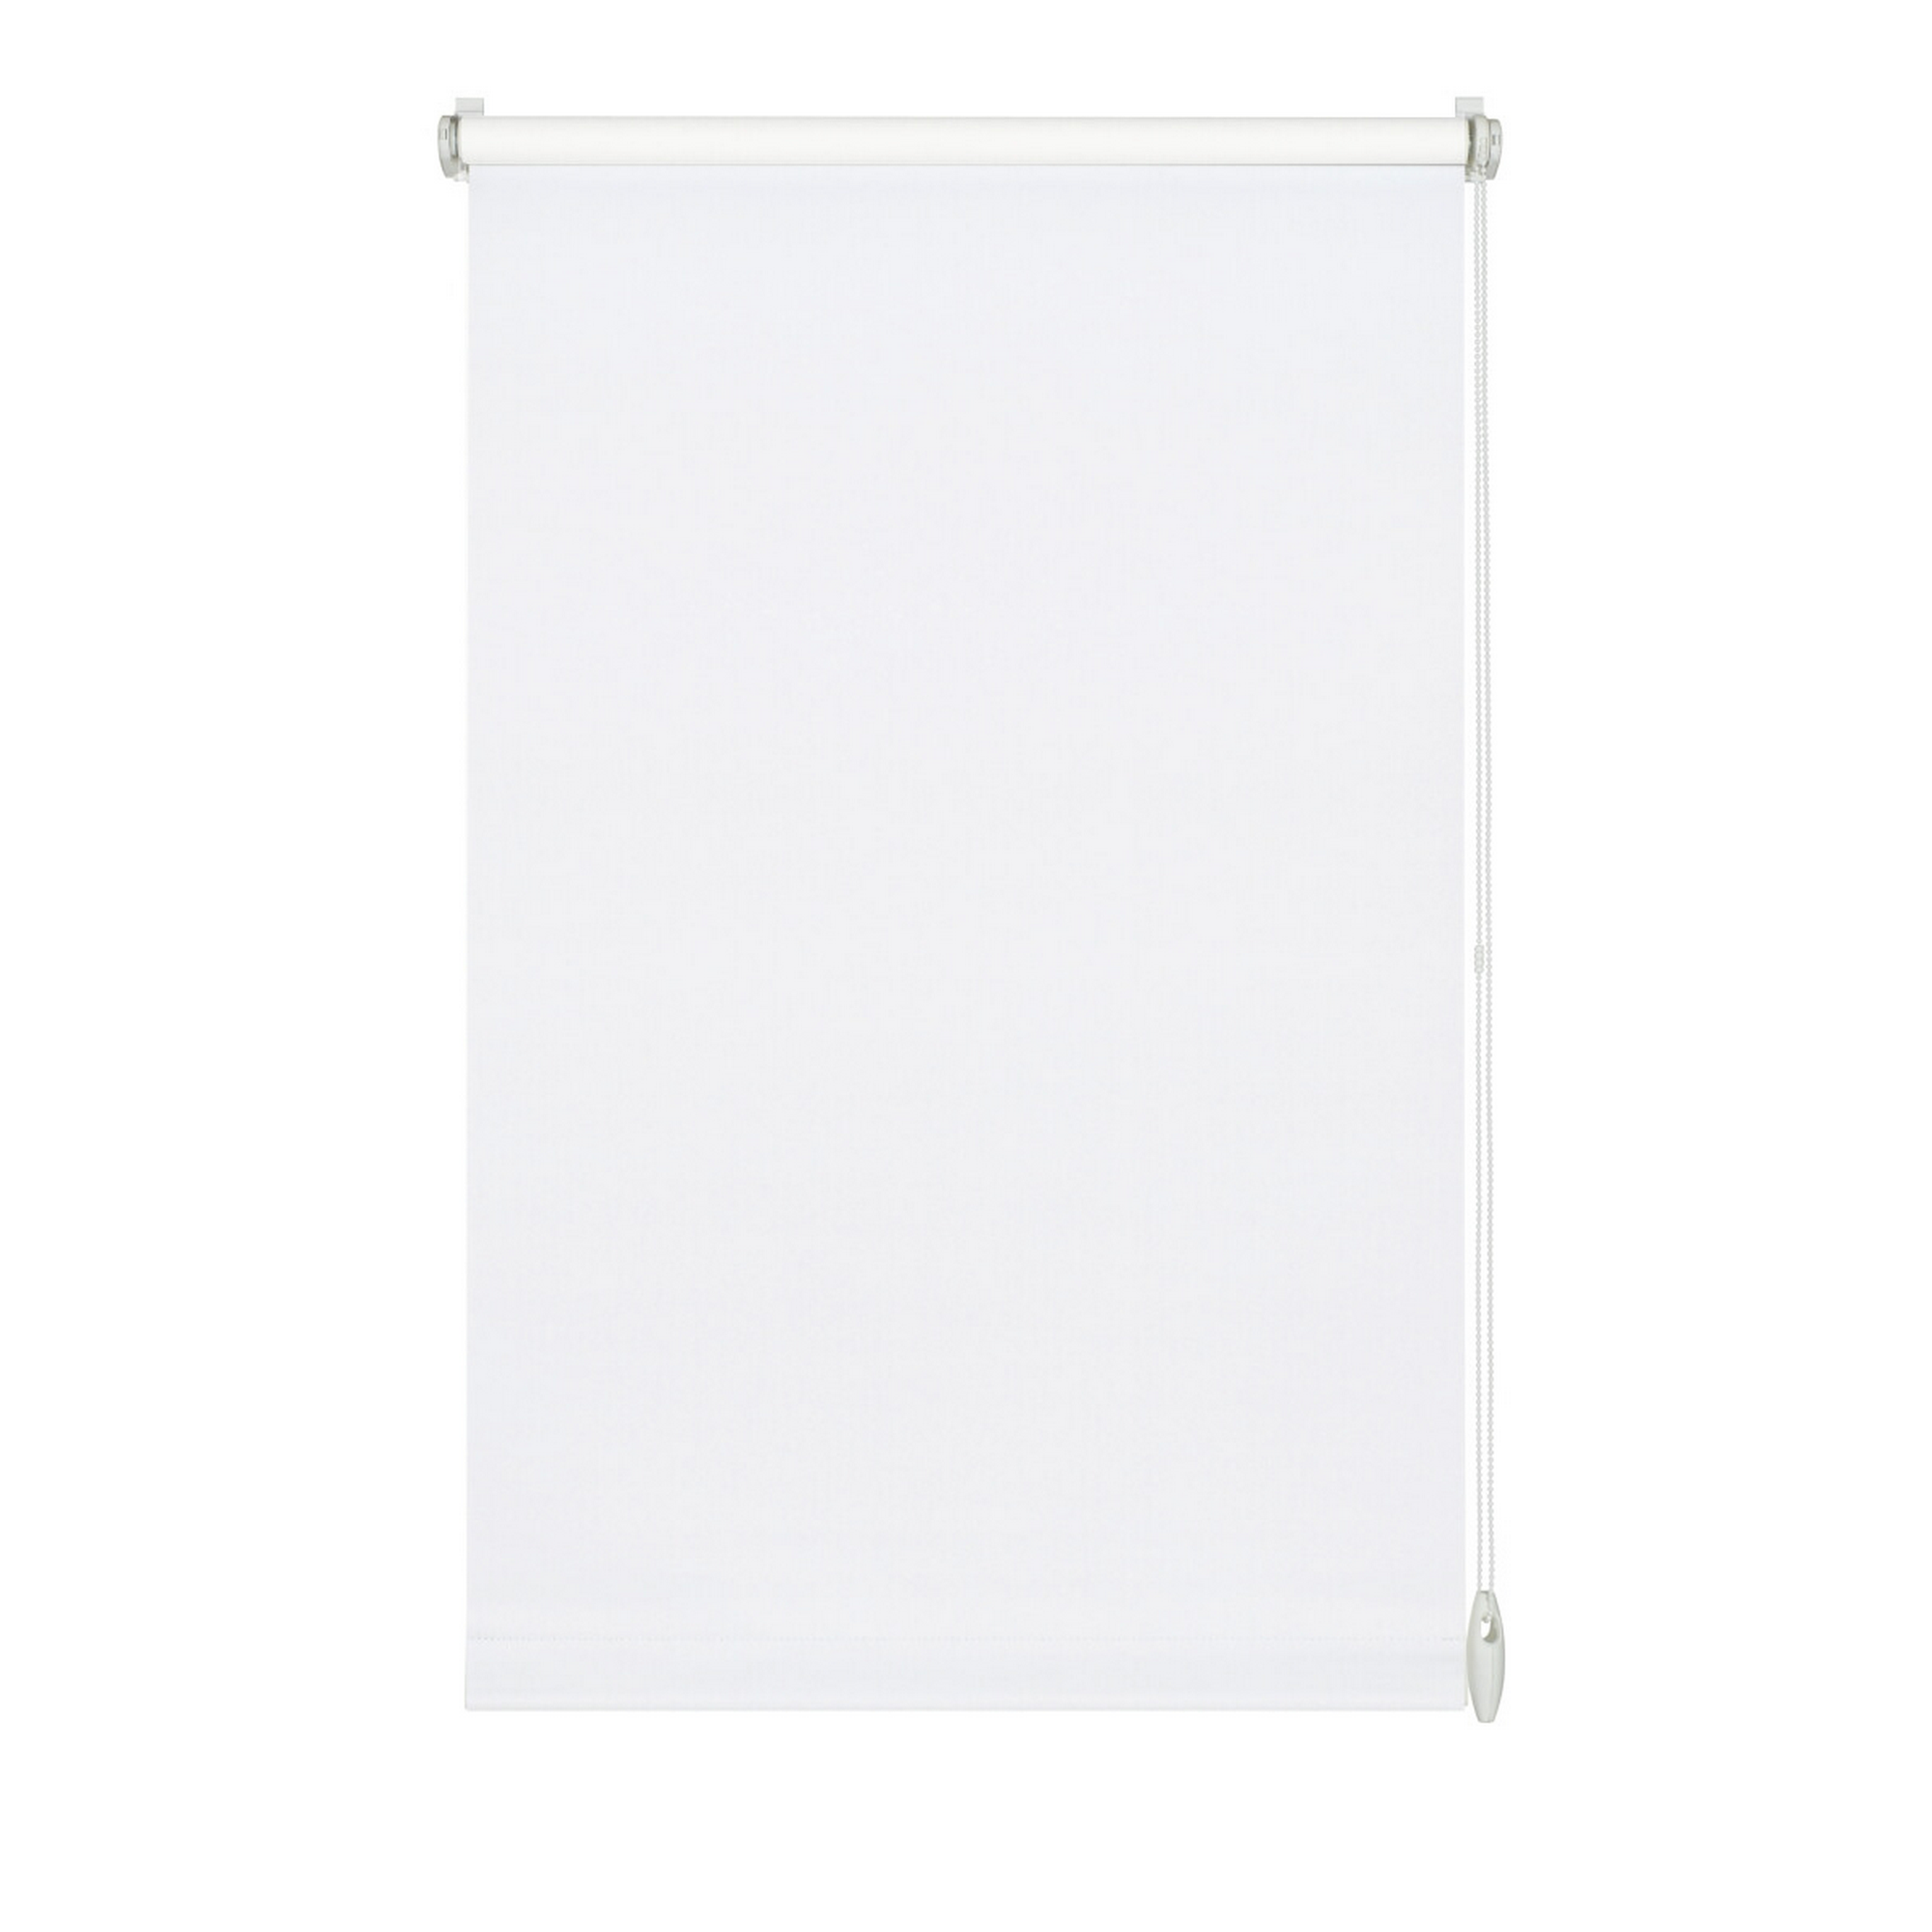 Seitenzug-Rollo 'EasyFix' weiß 100 x 150 cm + product picture